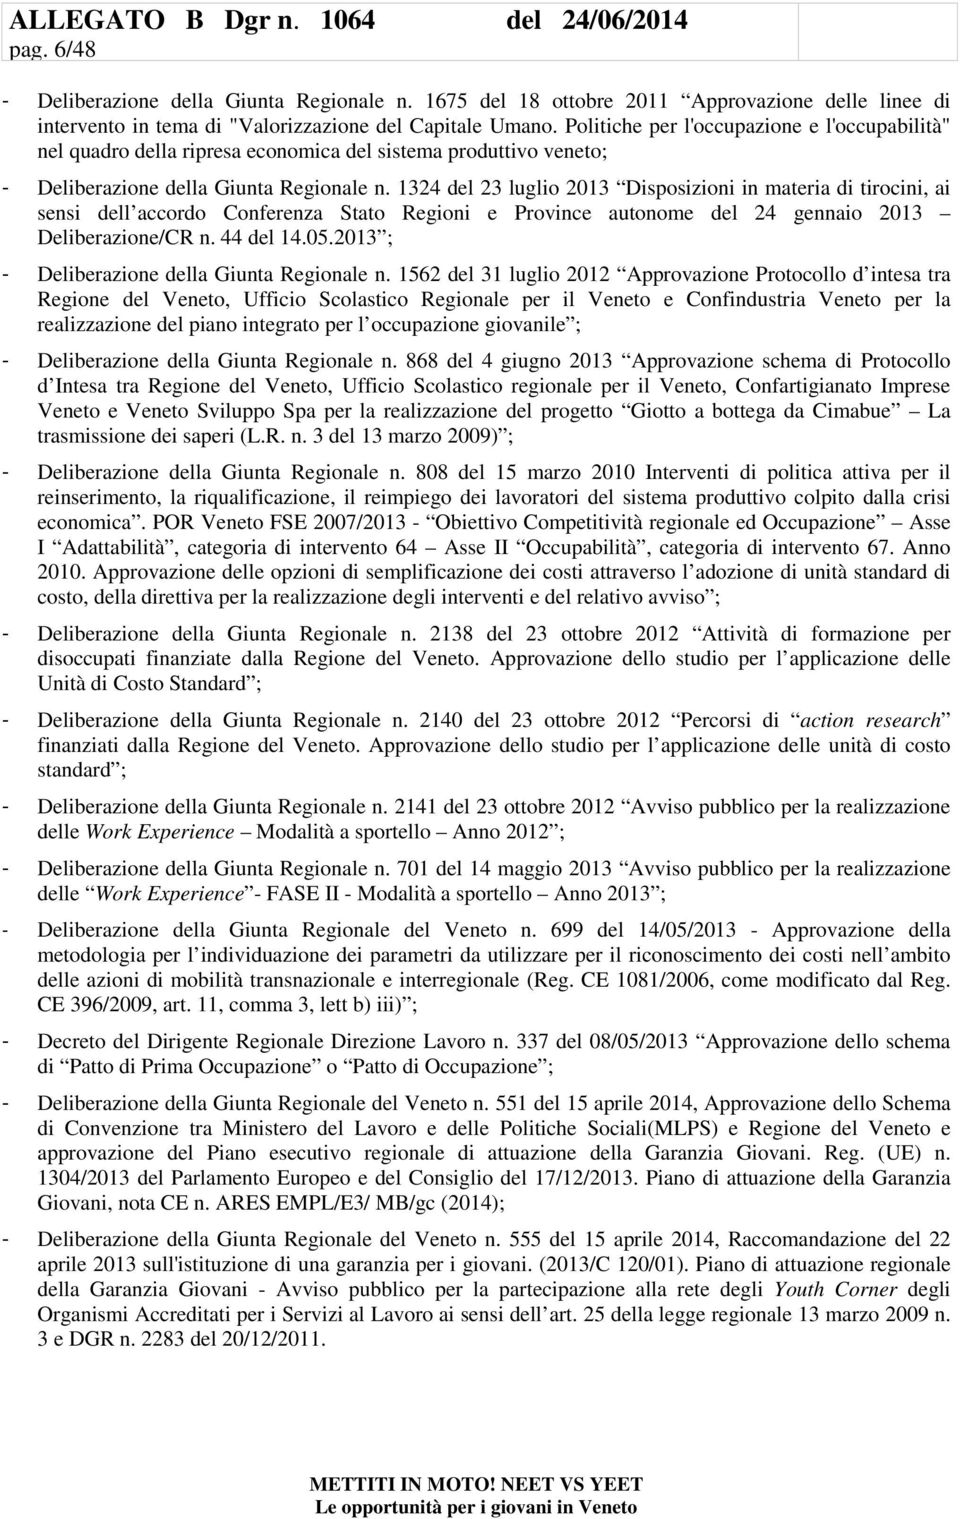 1324 del 23 luglio 2013 Disposizioni in materia di tirocini, ai sensi dell accordo Conferenza Stato Regioni e Province autonome del 24 gennaio 2013 Deliberazione/CR n. 44 del 14.05.